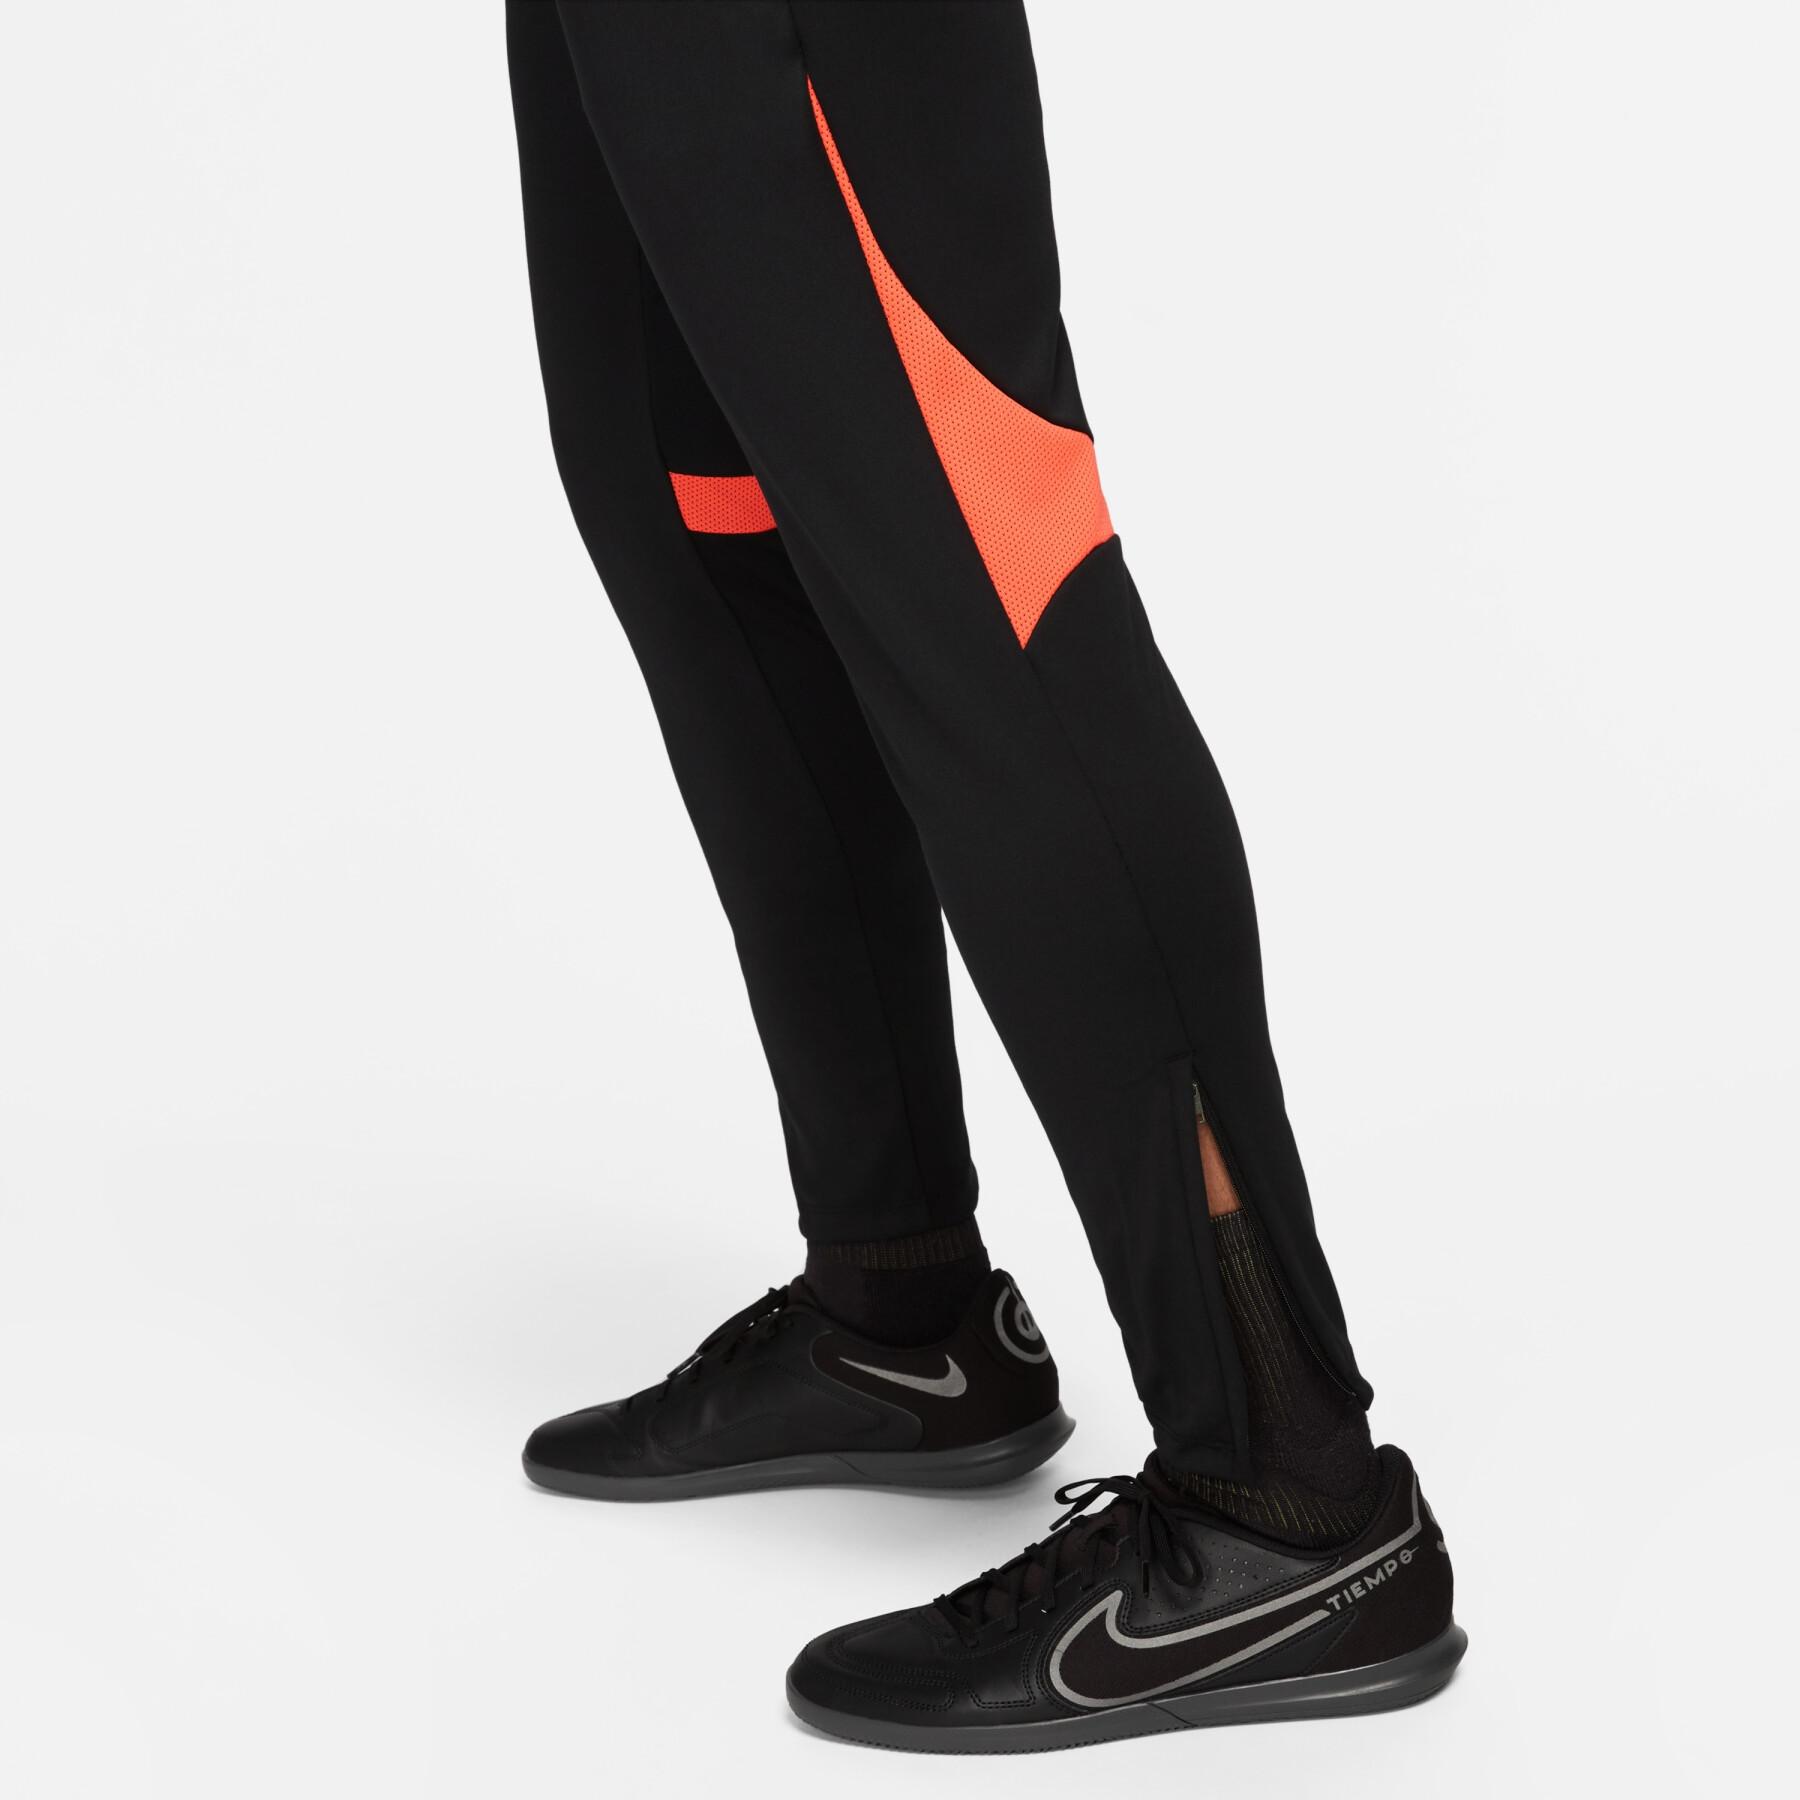 Sweatpants Nike Dri-FIT Academy pro